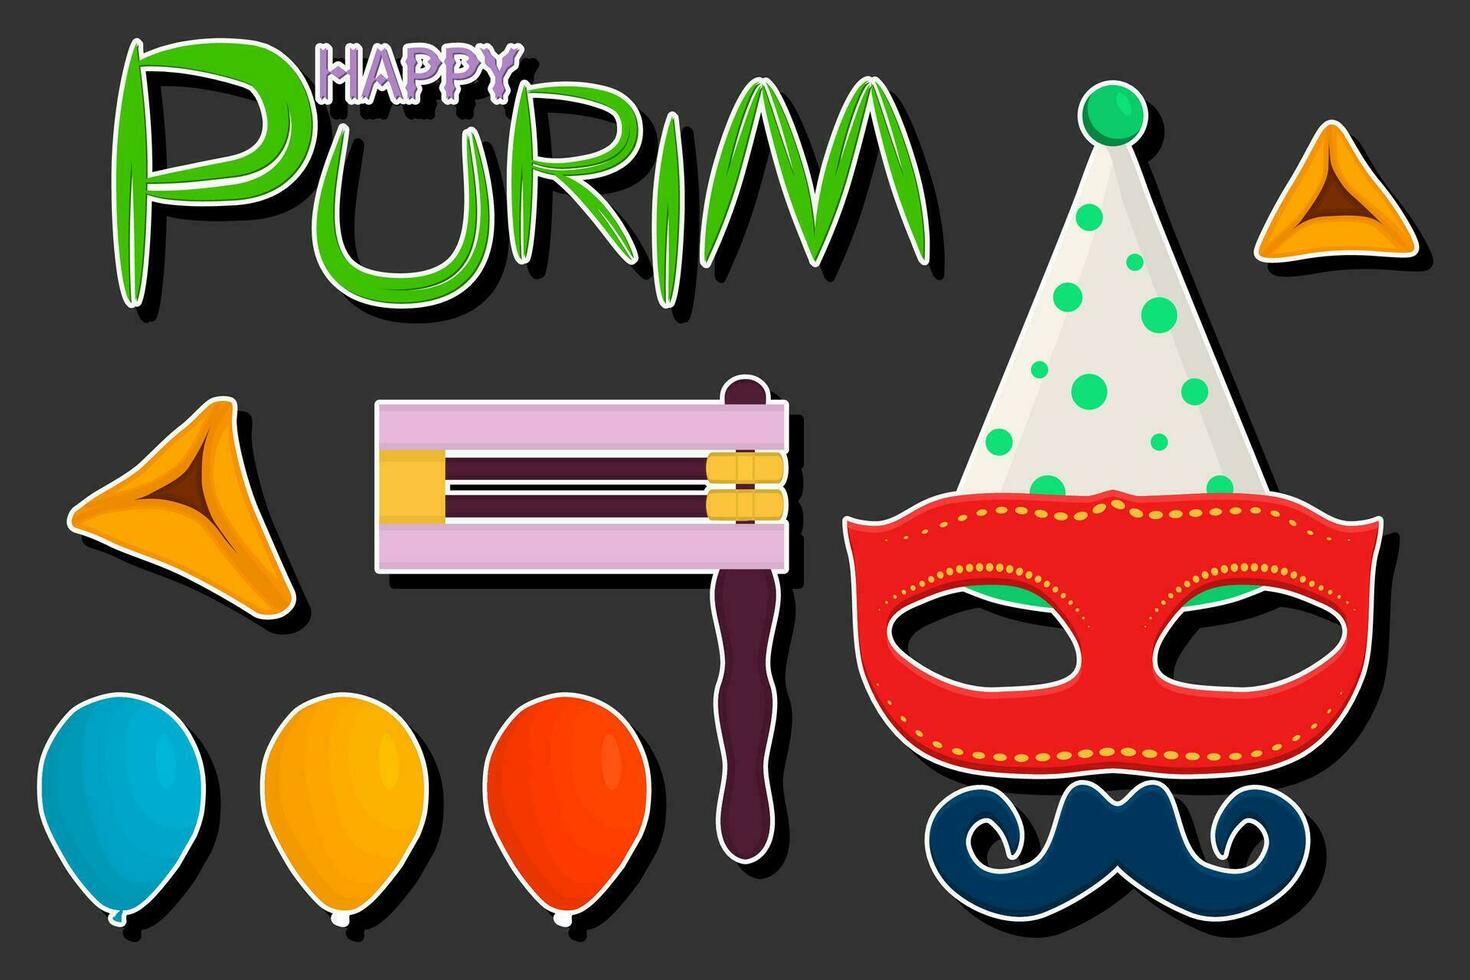 bellissimo illustrazione su tema di festeggiare annuale vacanza Purim vettore